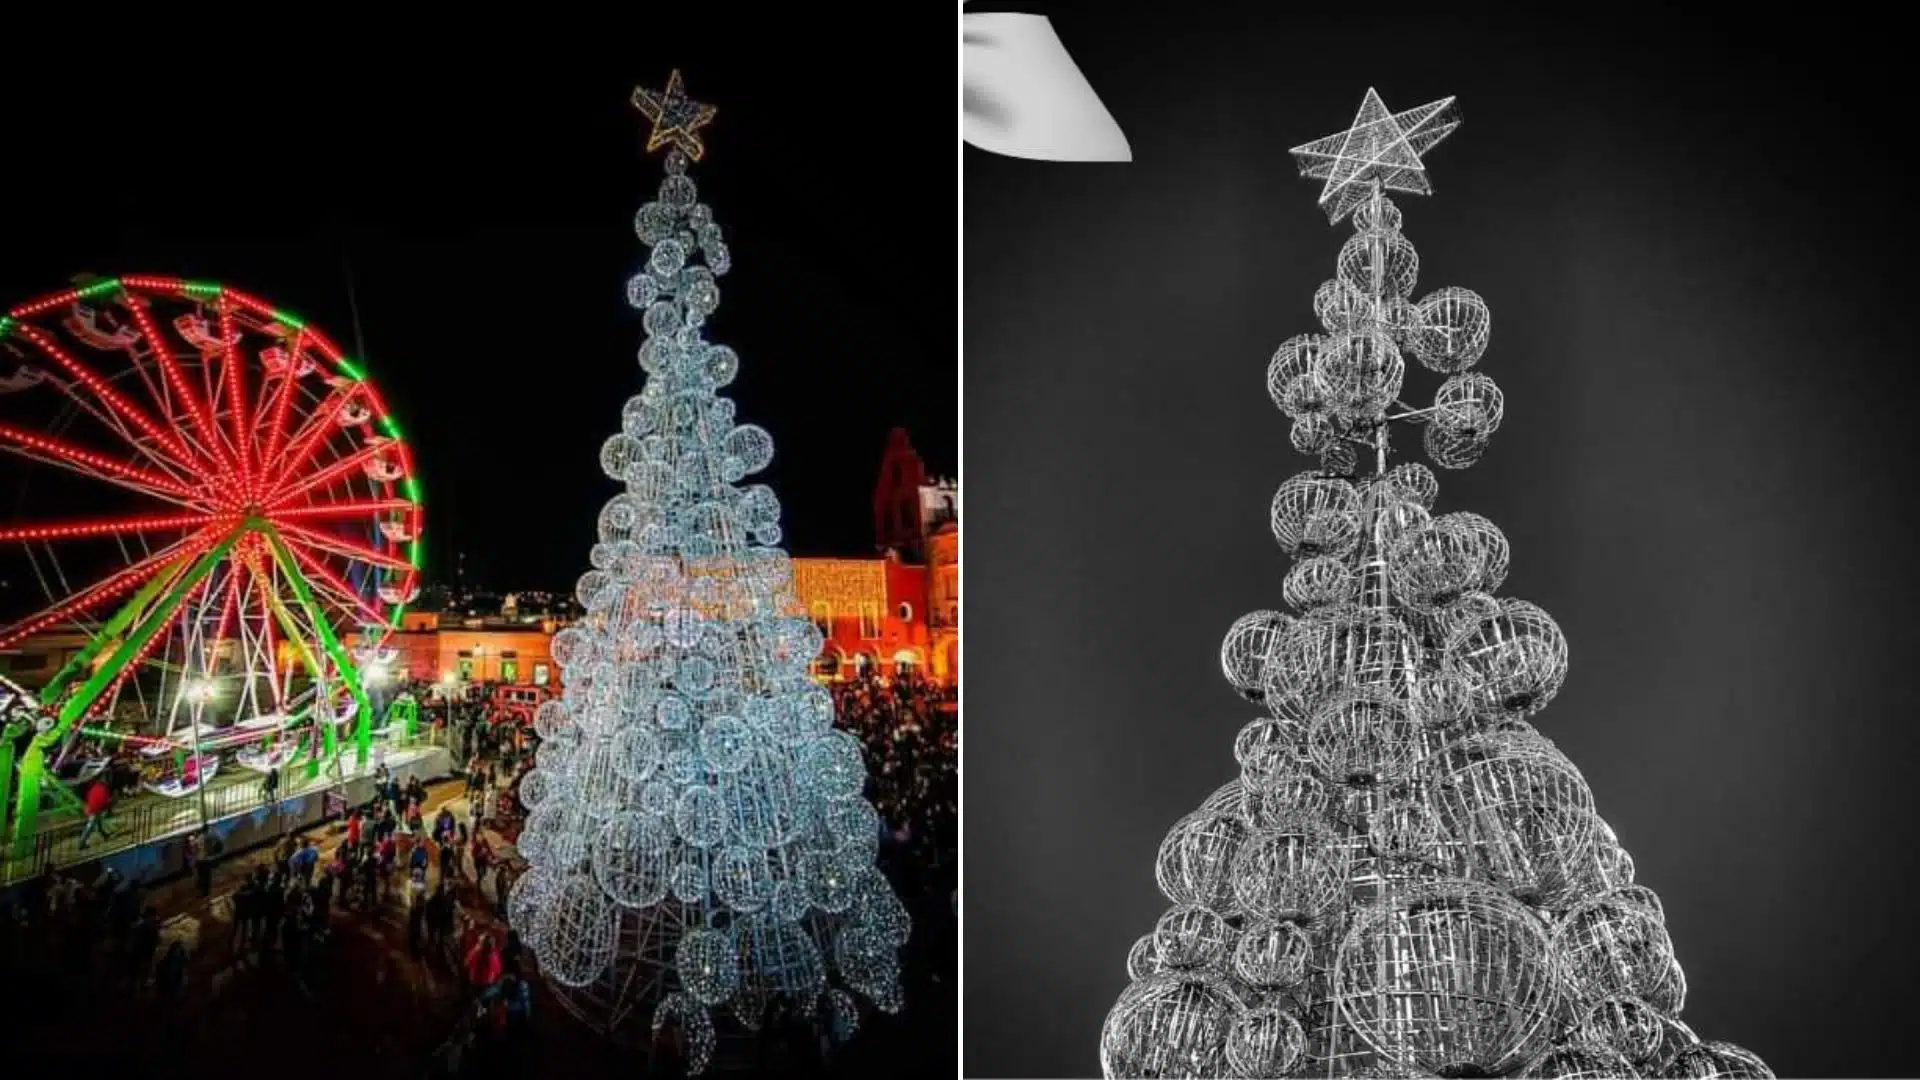 Apagan enorme árbol de Navidad por masacre de Salvatierra, Guanajuato